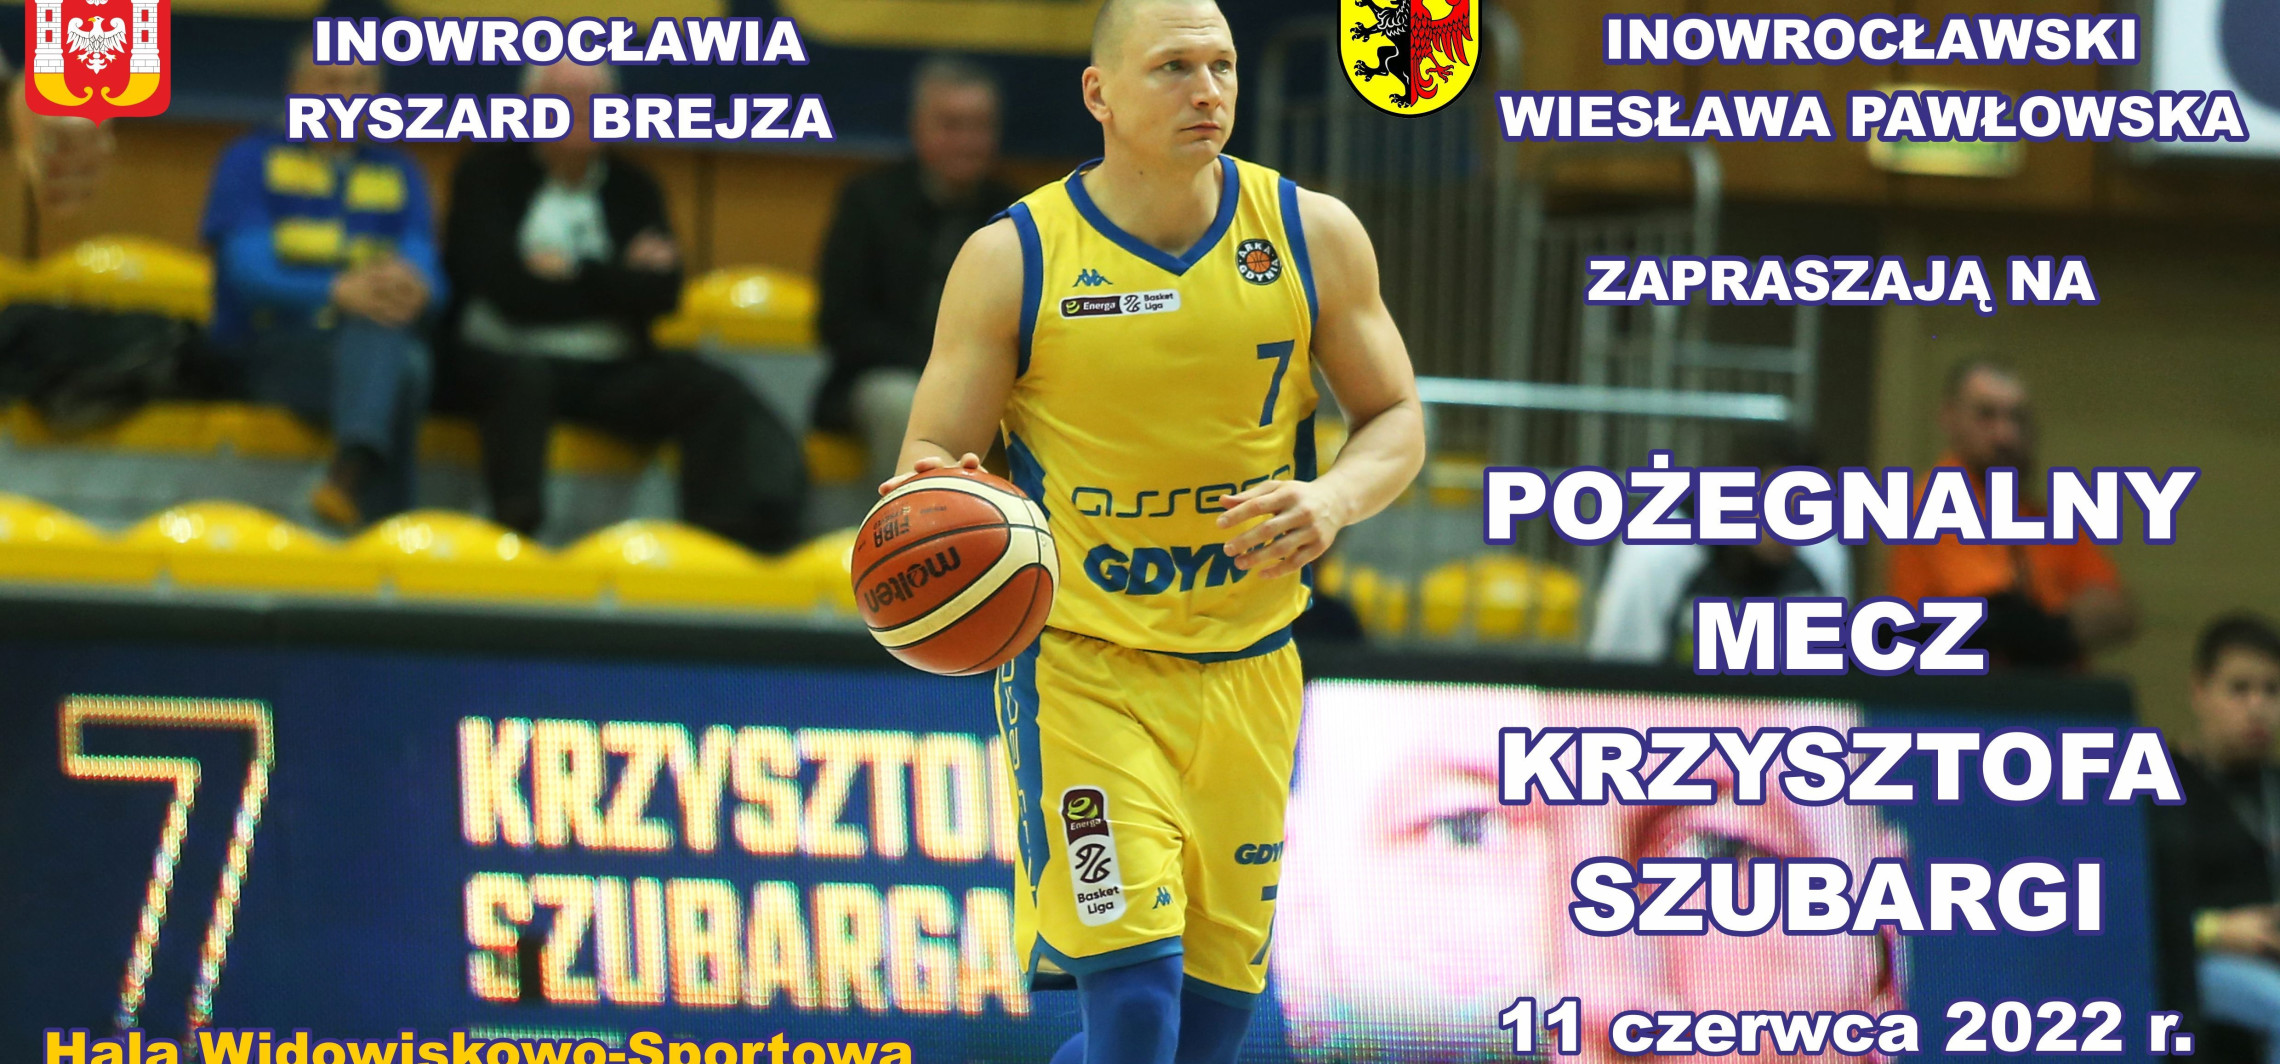 Inowrocław - Pożegnalny mecz Krzysztofa Szubargi. Gdzie kupić bilety?